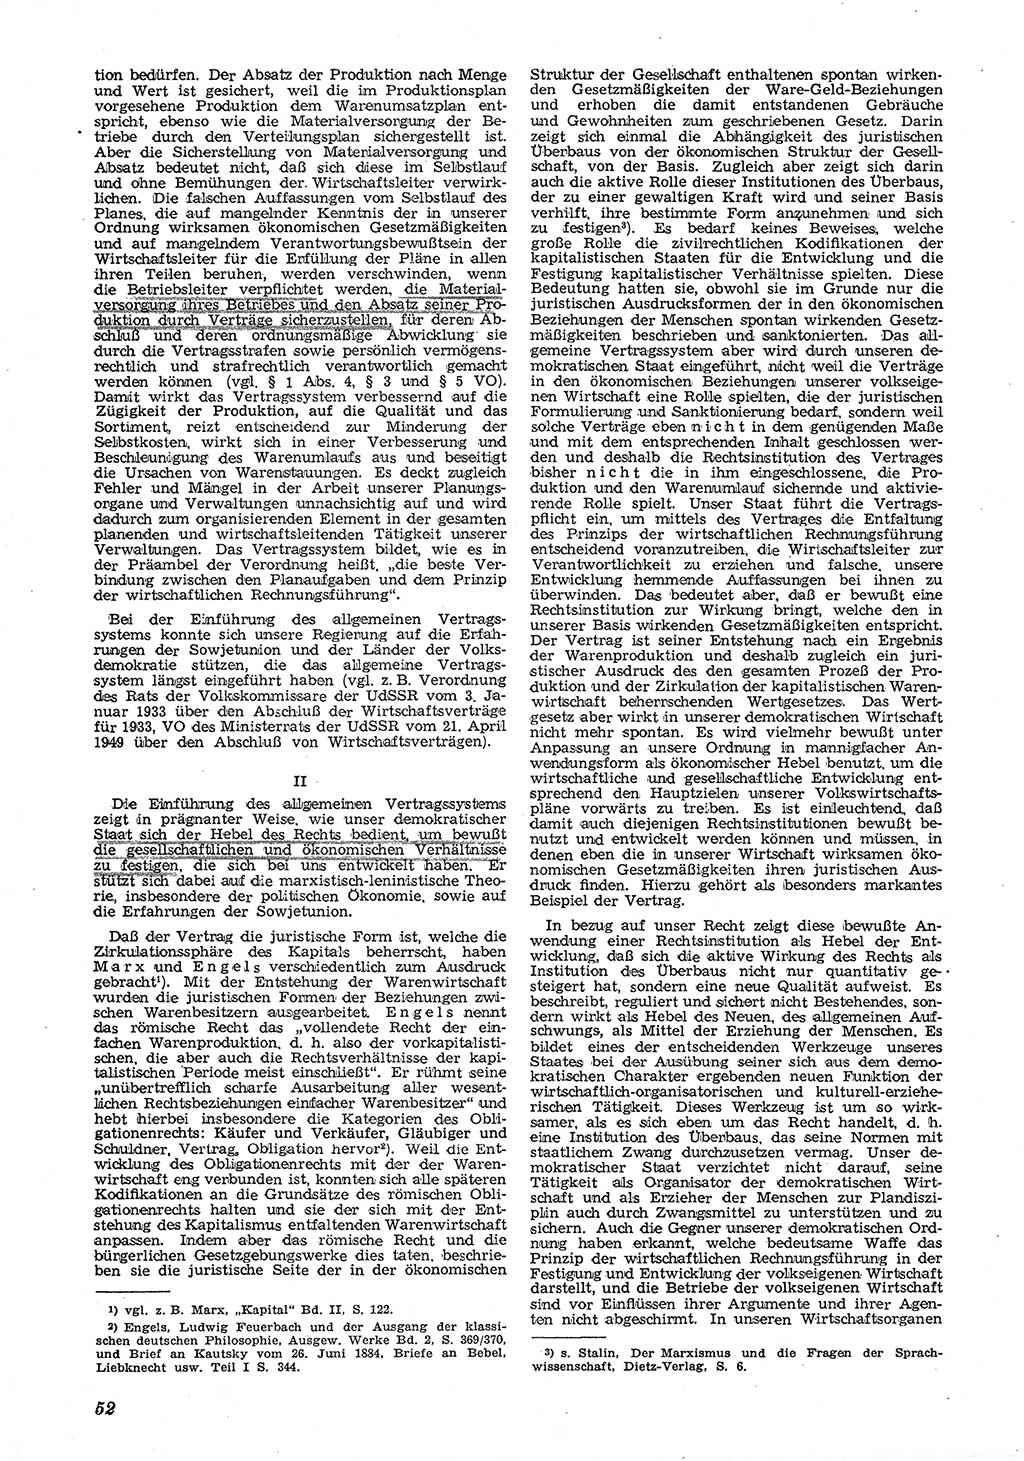 Neue Justiz (NJ), Zeitschrift für Recht und Rechtswissenschaft [Deutsche Demokratische Republik (DDR)], 6. Jahrgang 1952, Seite 52 (NJ DDR 1952, S. 52)